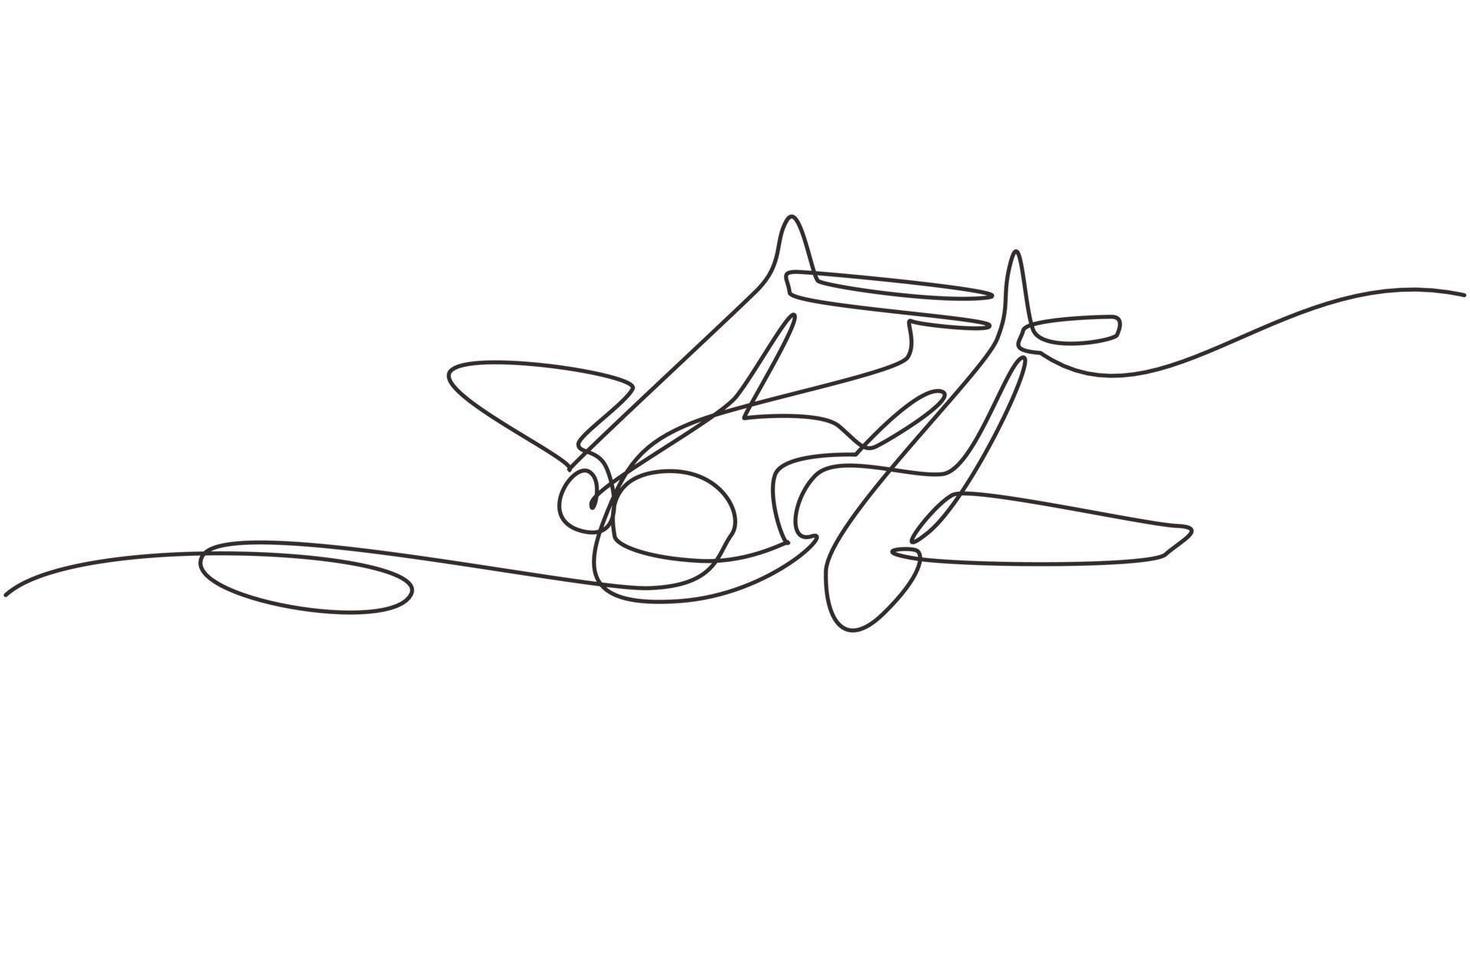 única linha contínua desenhando modelos de aviões vintage. aeronaves retrô com ícone de hélice. planos monoplanos e biplanos. transporte aéreo. uma linha desenhar ilustração em vetor design gráfico